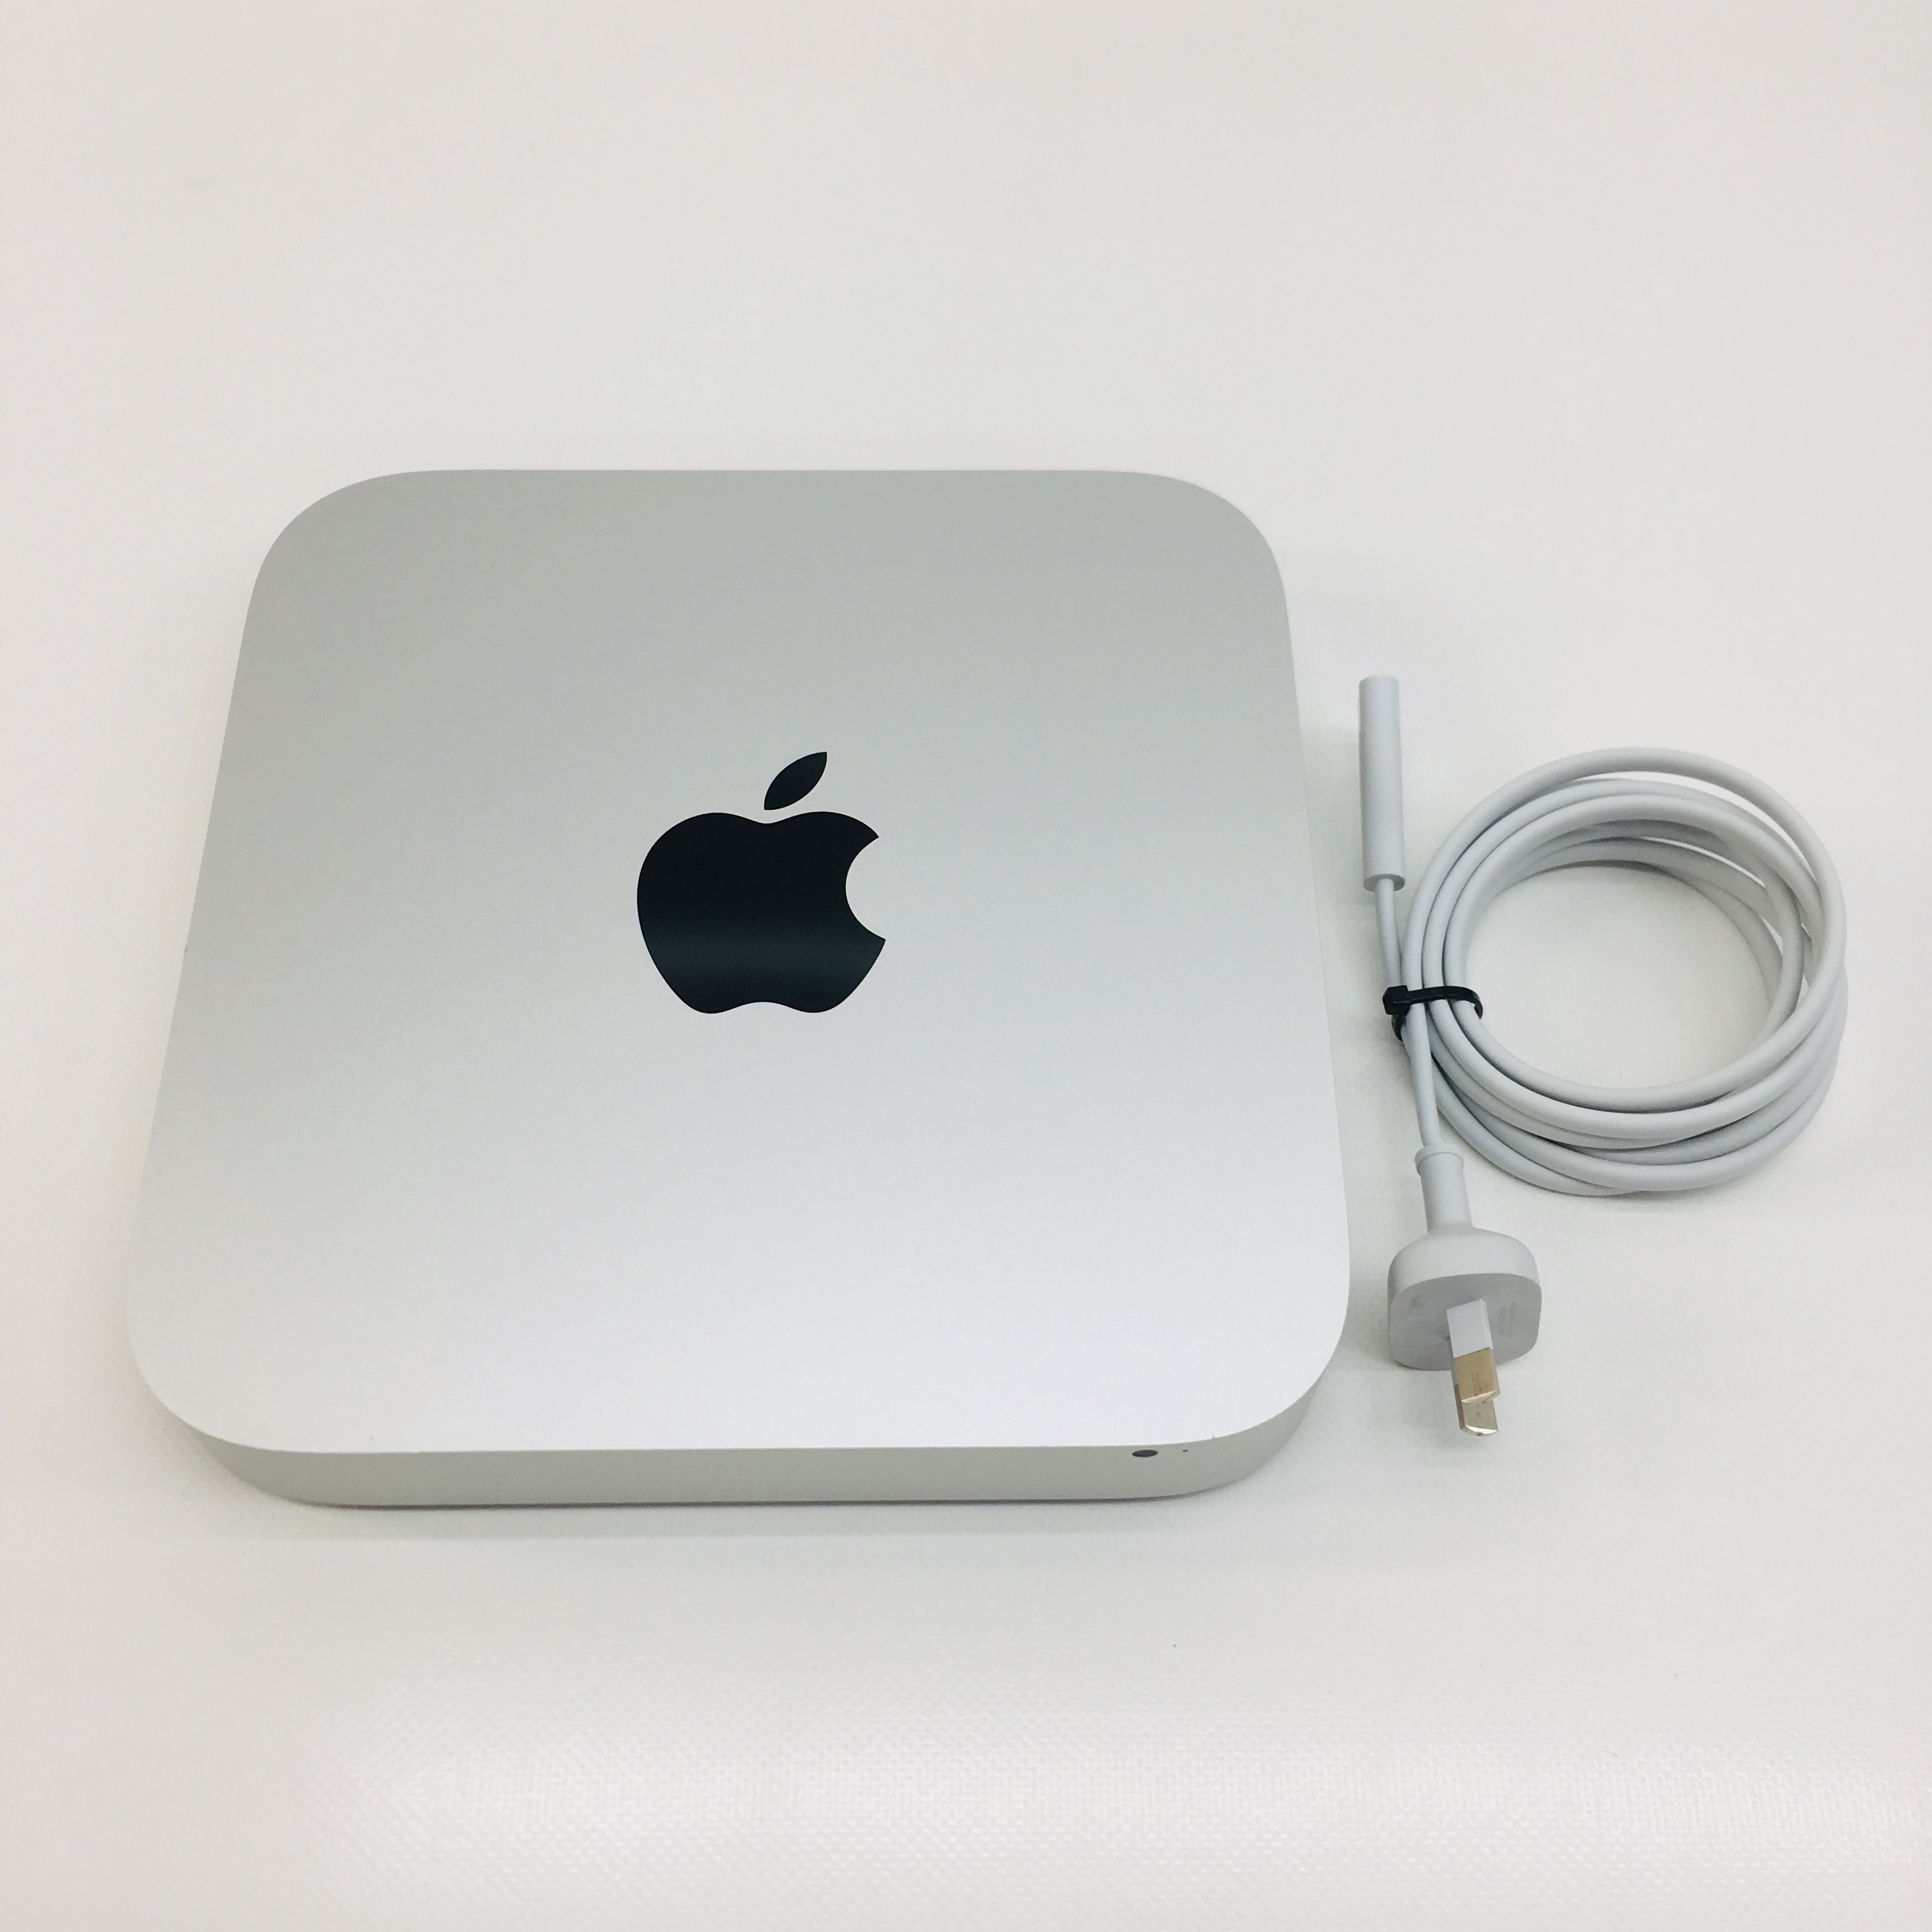 Mac mini i5 16GB 1TB Fusion Drive 2014 昨季賞金女王 - www